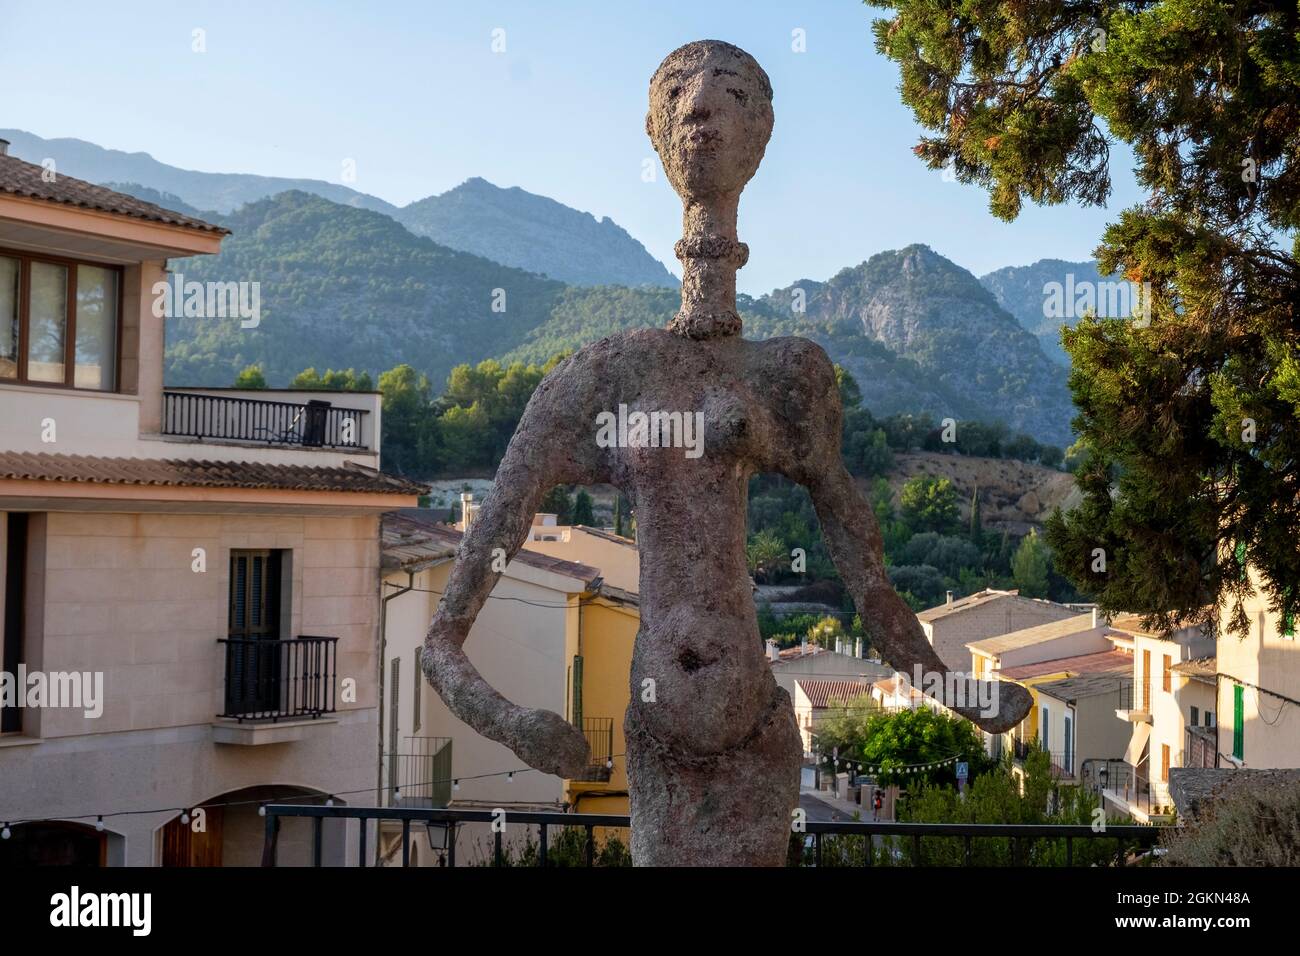 Strana statua nella piazza centrale, Selva, Maiorca, Isole Baleari, Spagna Foto Stock